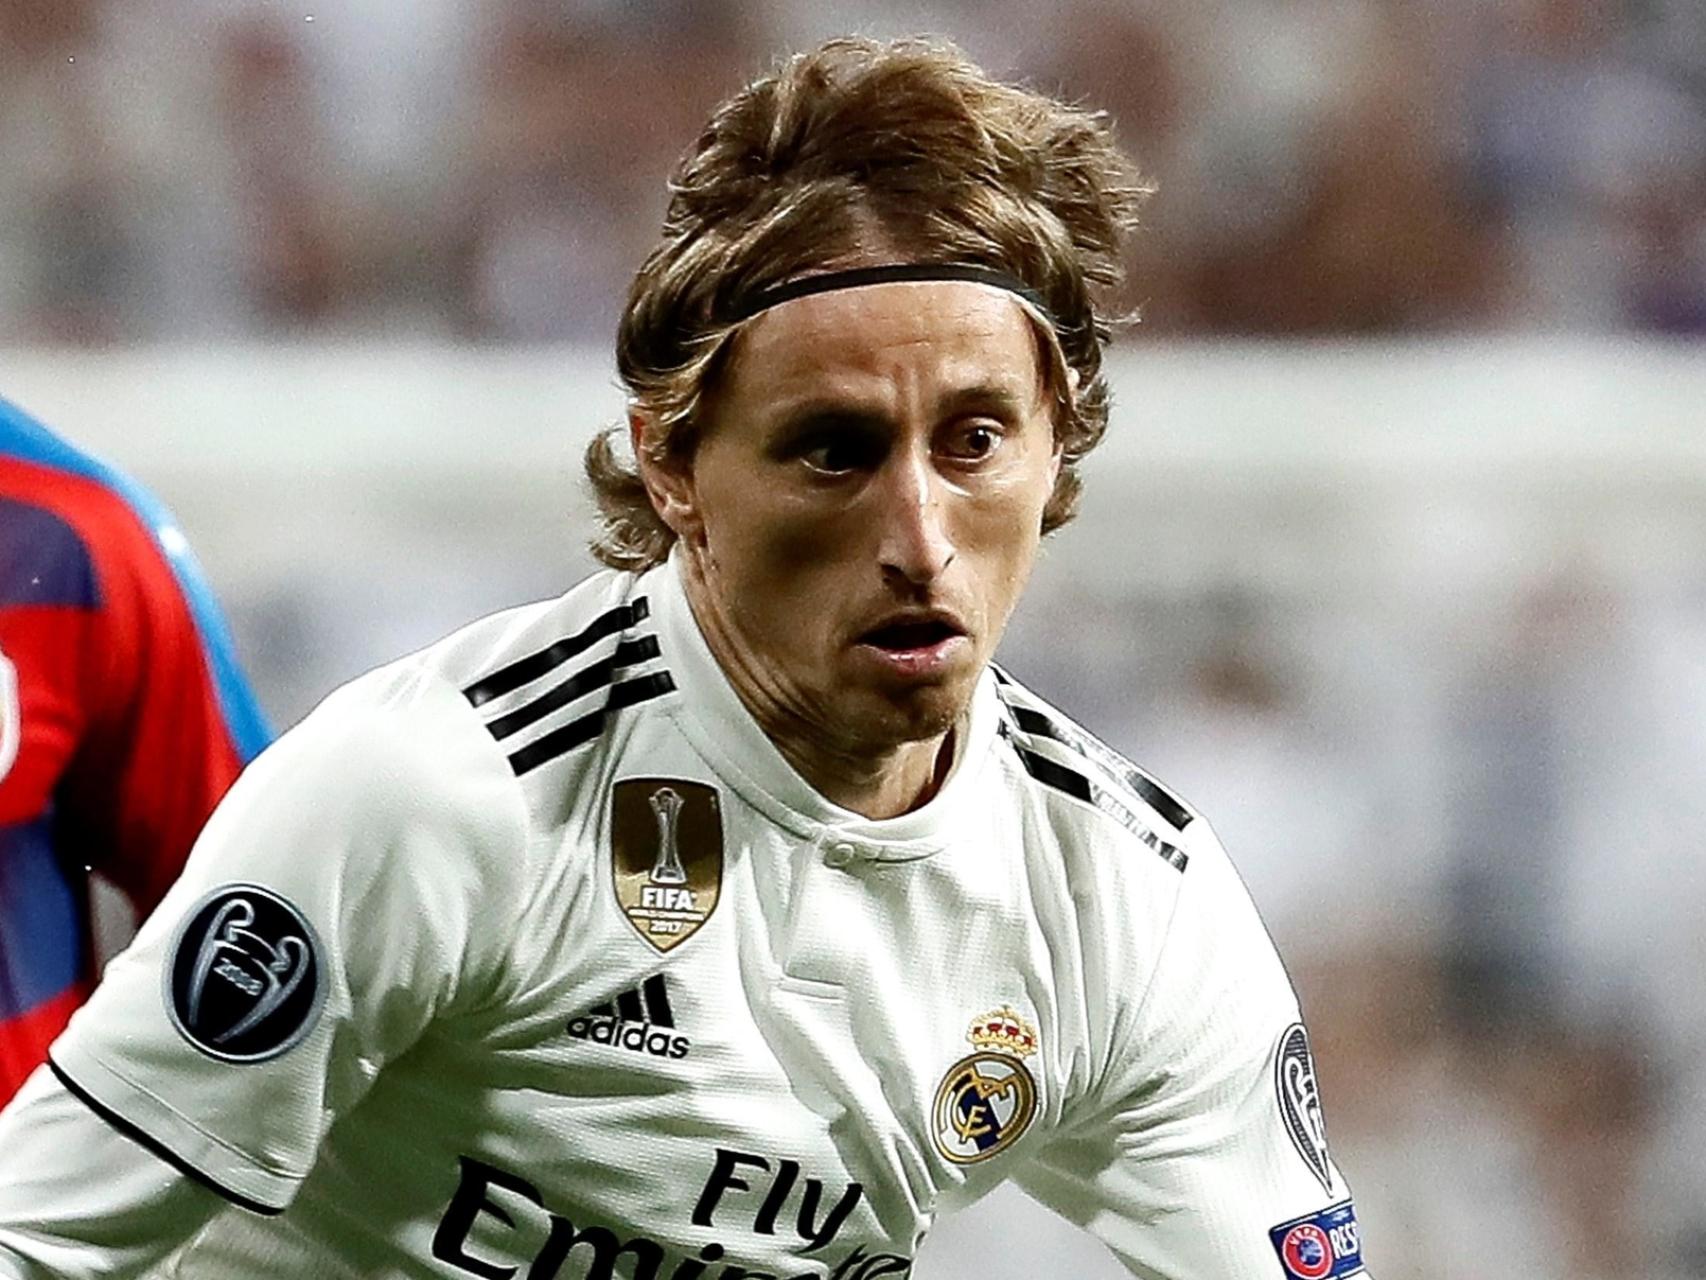 Luka Modric pelea un balón con el centrocampista del Viktoria Pilsen Milan Petrzela